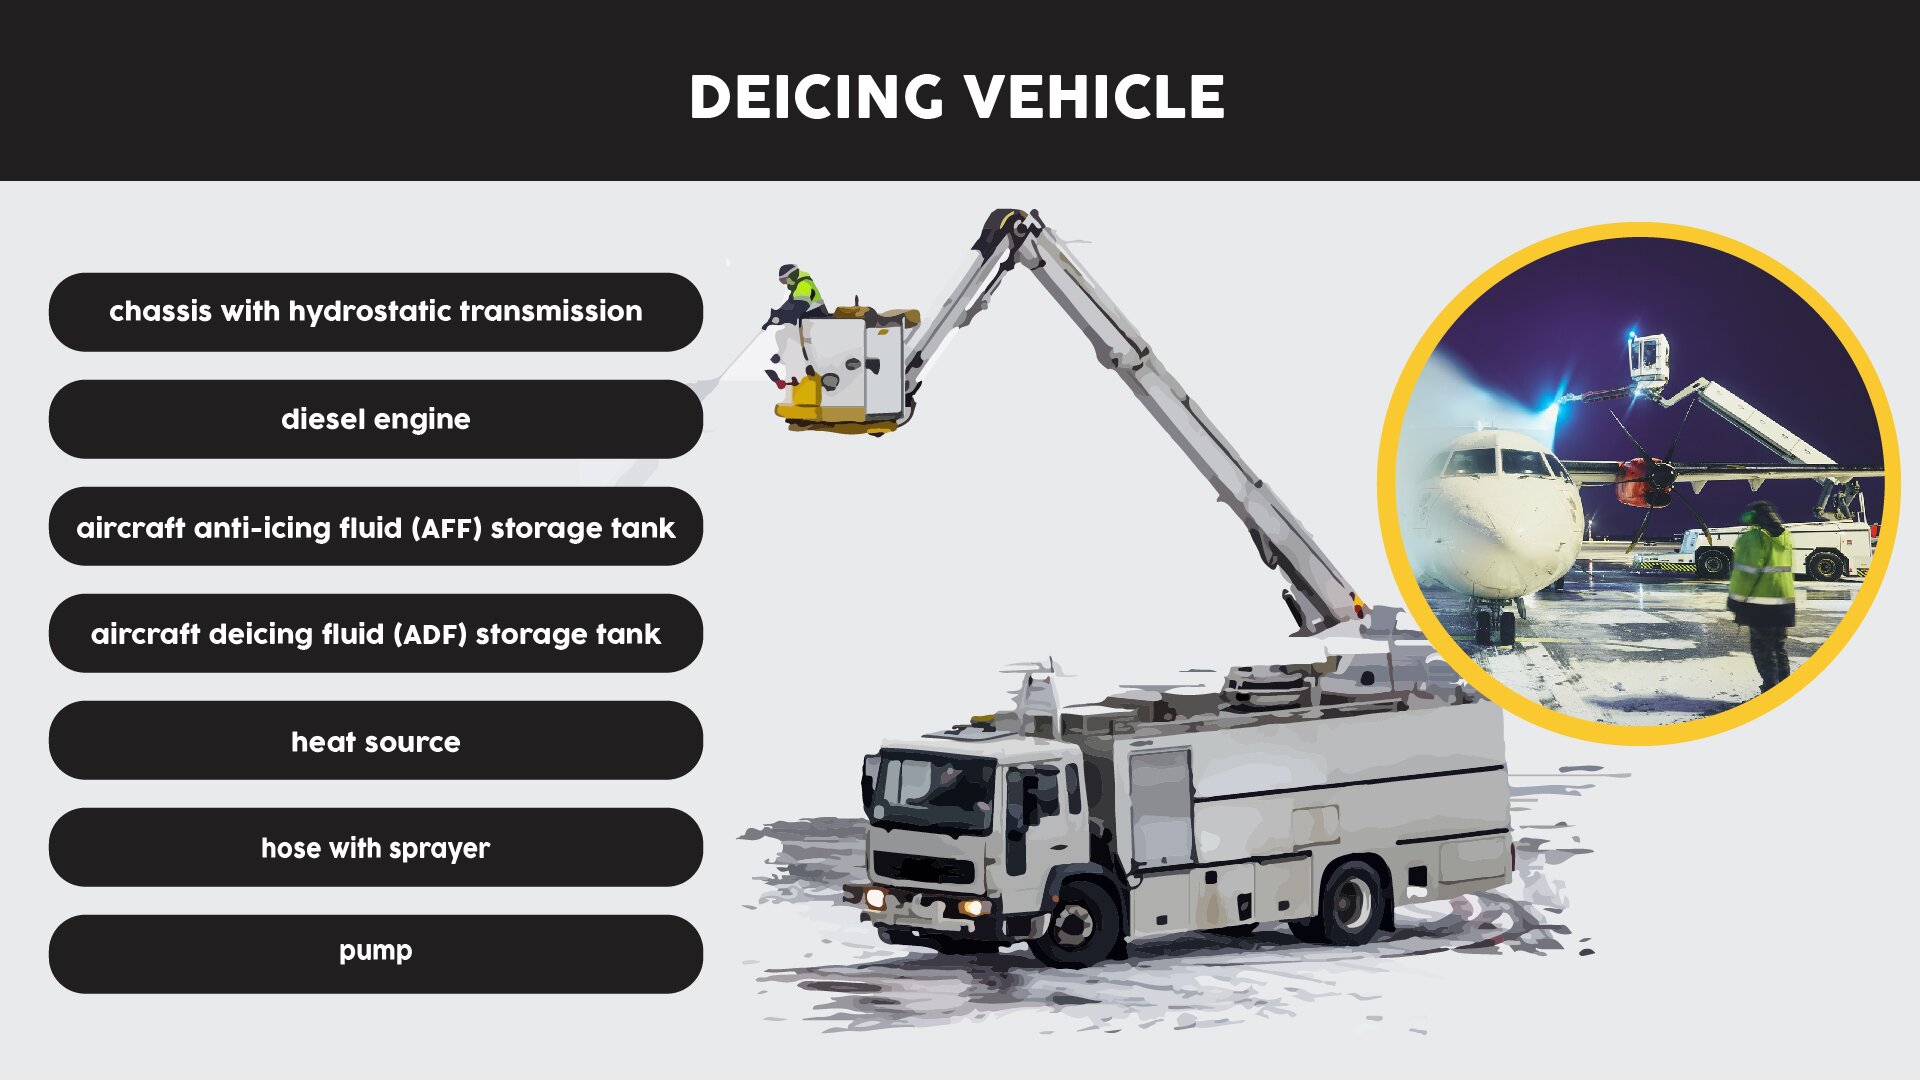 The image presents a deicing vehicle designed for airplane servicing. Grafika przedstawia odladzarkę zaprojektowaną do obsługi samolotów.